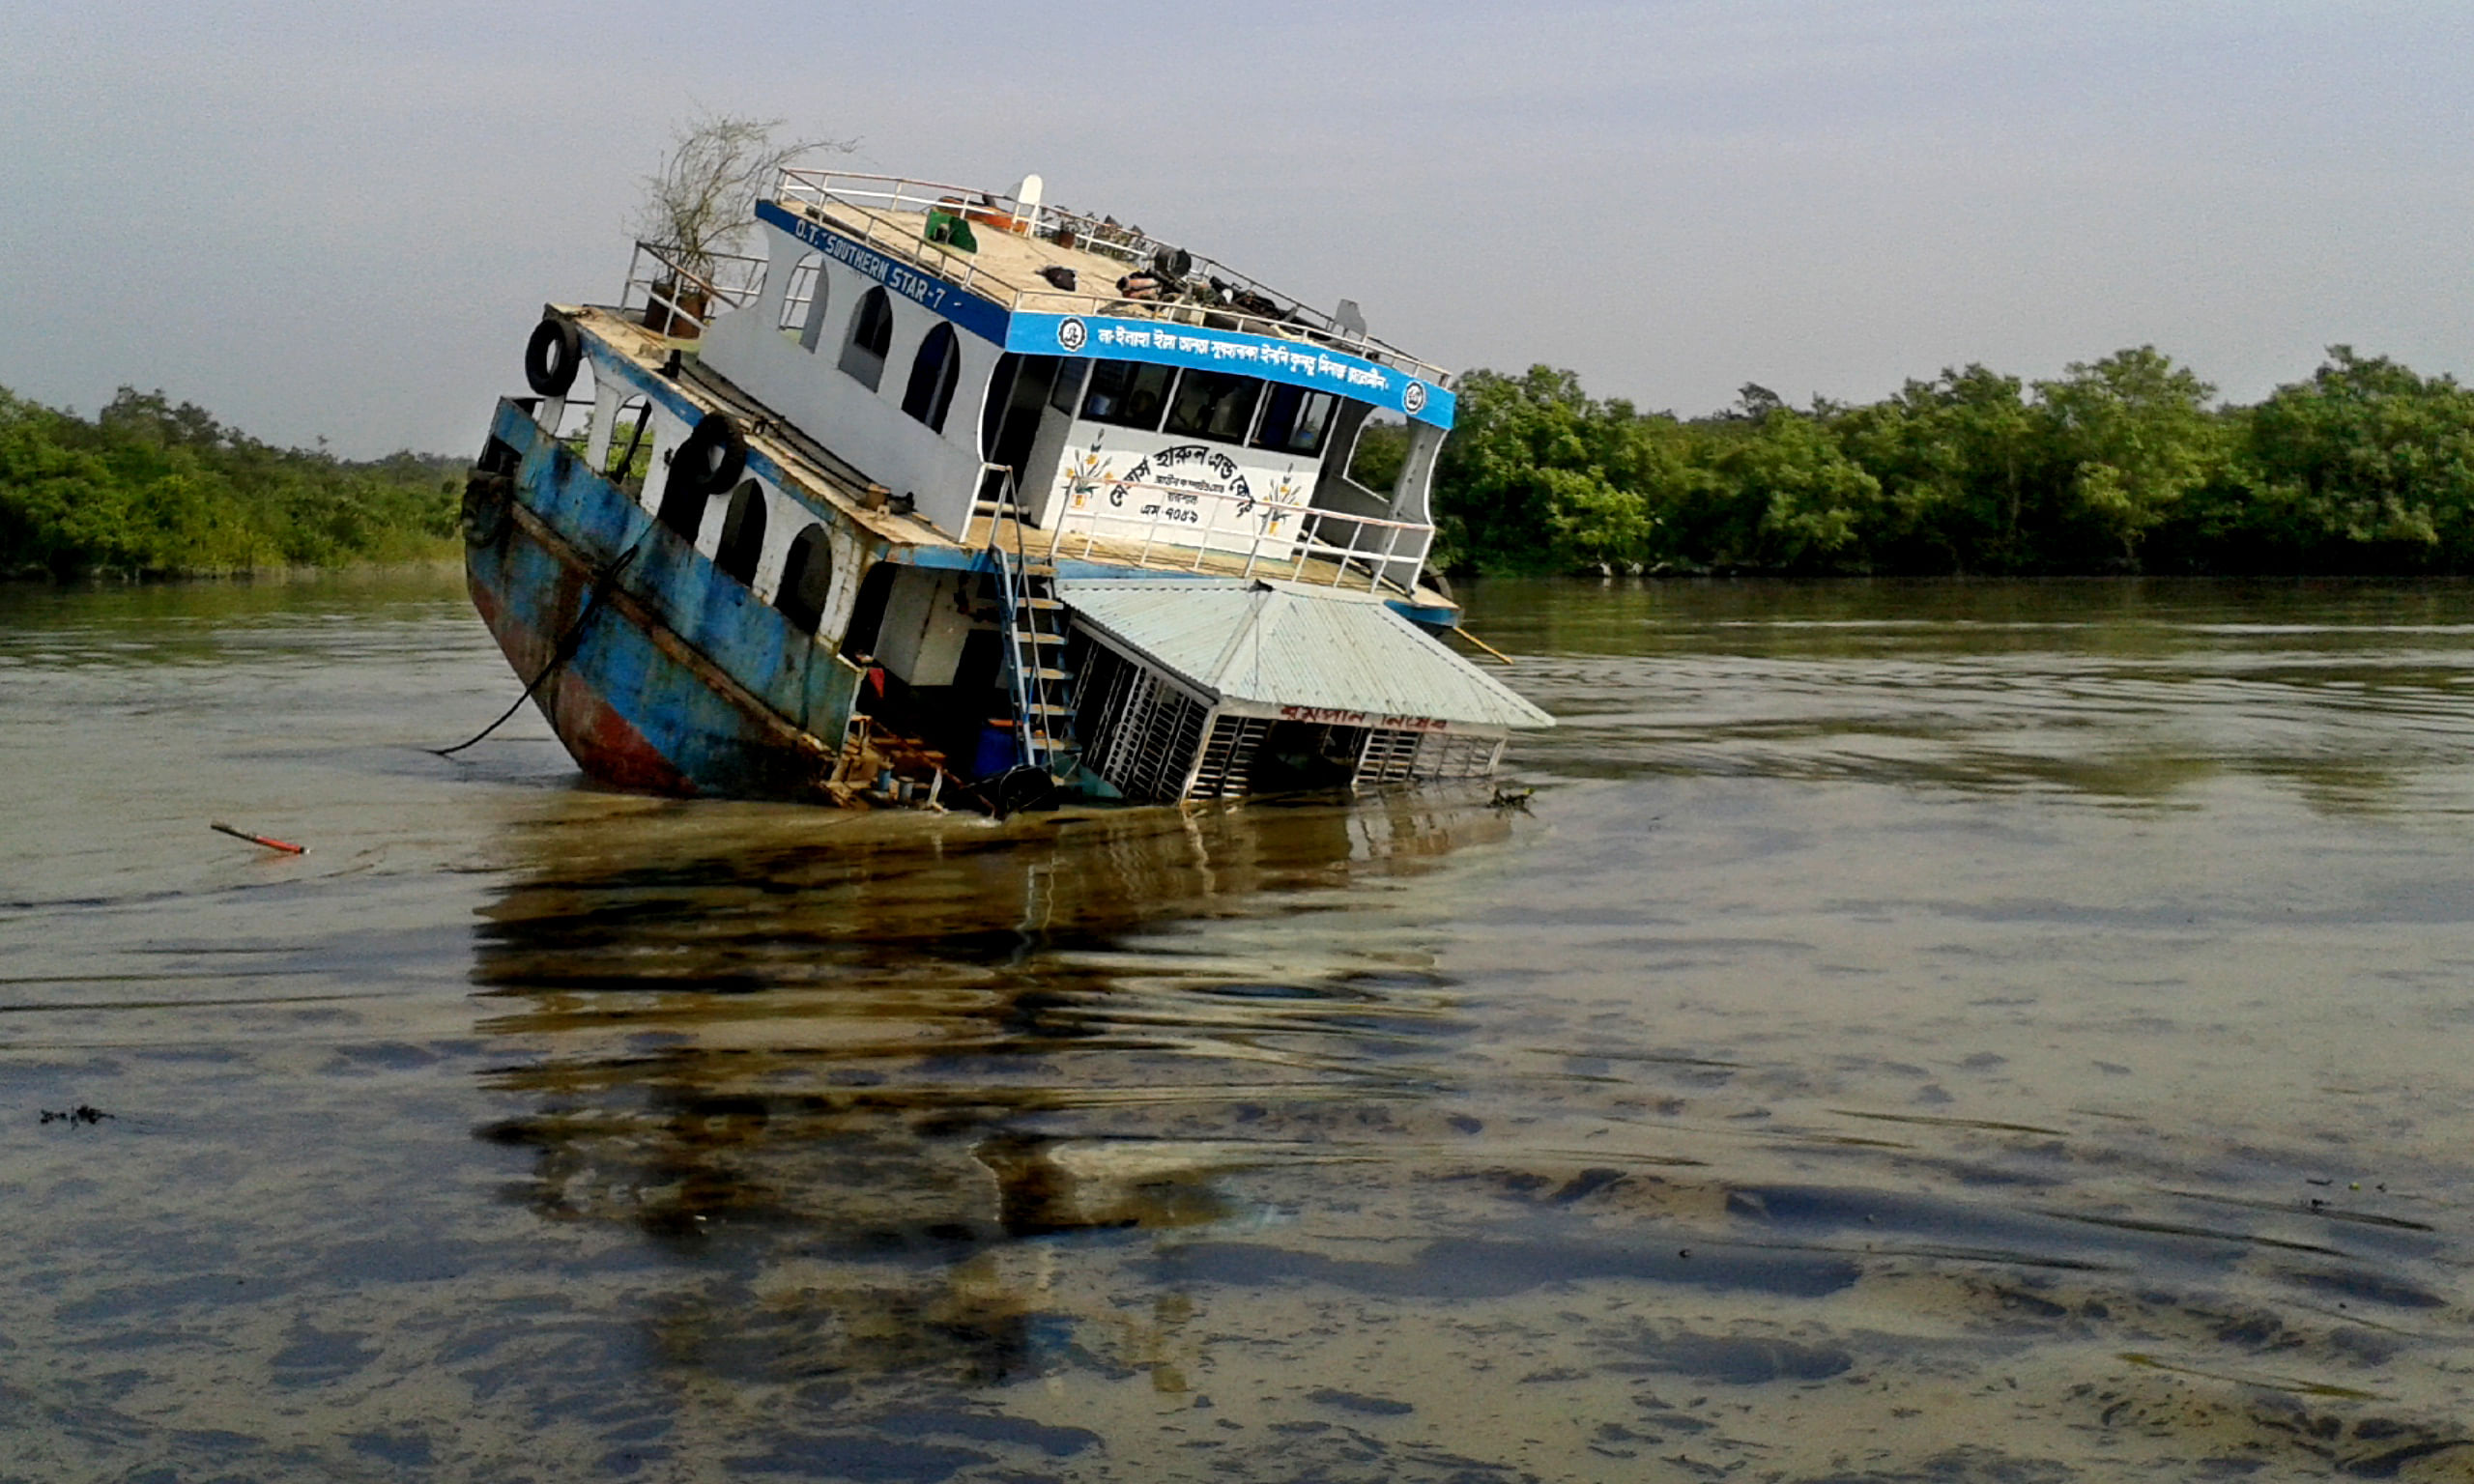 The oil tanker that sank in Shela river in the Sundarbans on December 9. Photo: Star